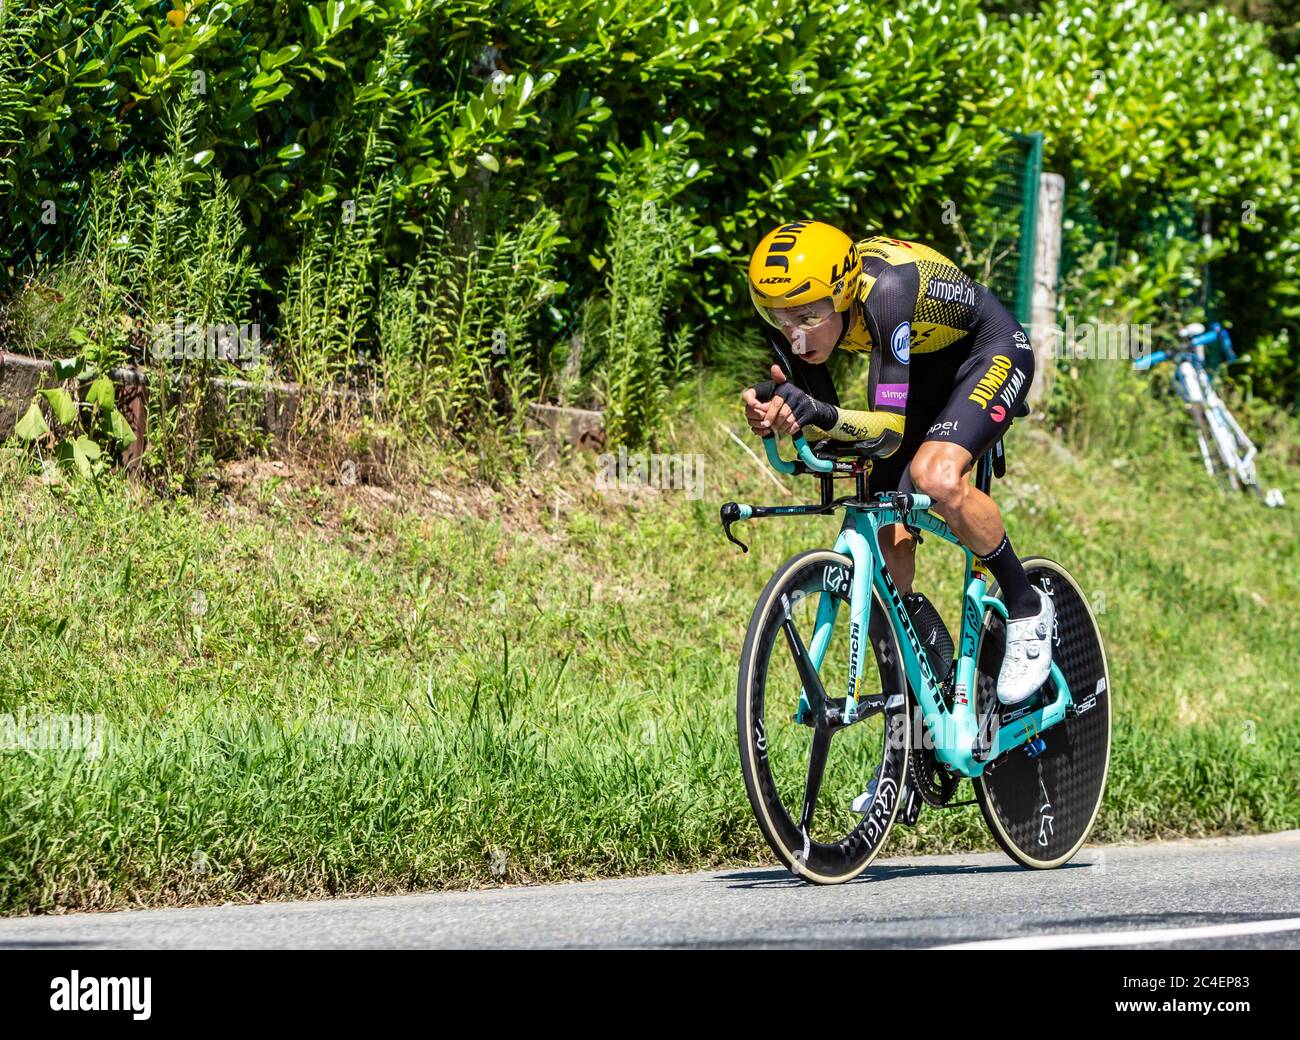 Bossarros, Francia - 19 luglio 2019: Il ciclista neozelandese George Bennett del Team Jumbo-Visma che cavalca durante la tappa 13, prova individuale, di le To Foto Stock